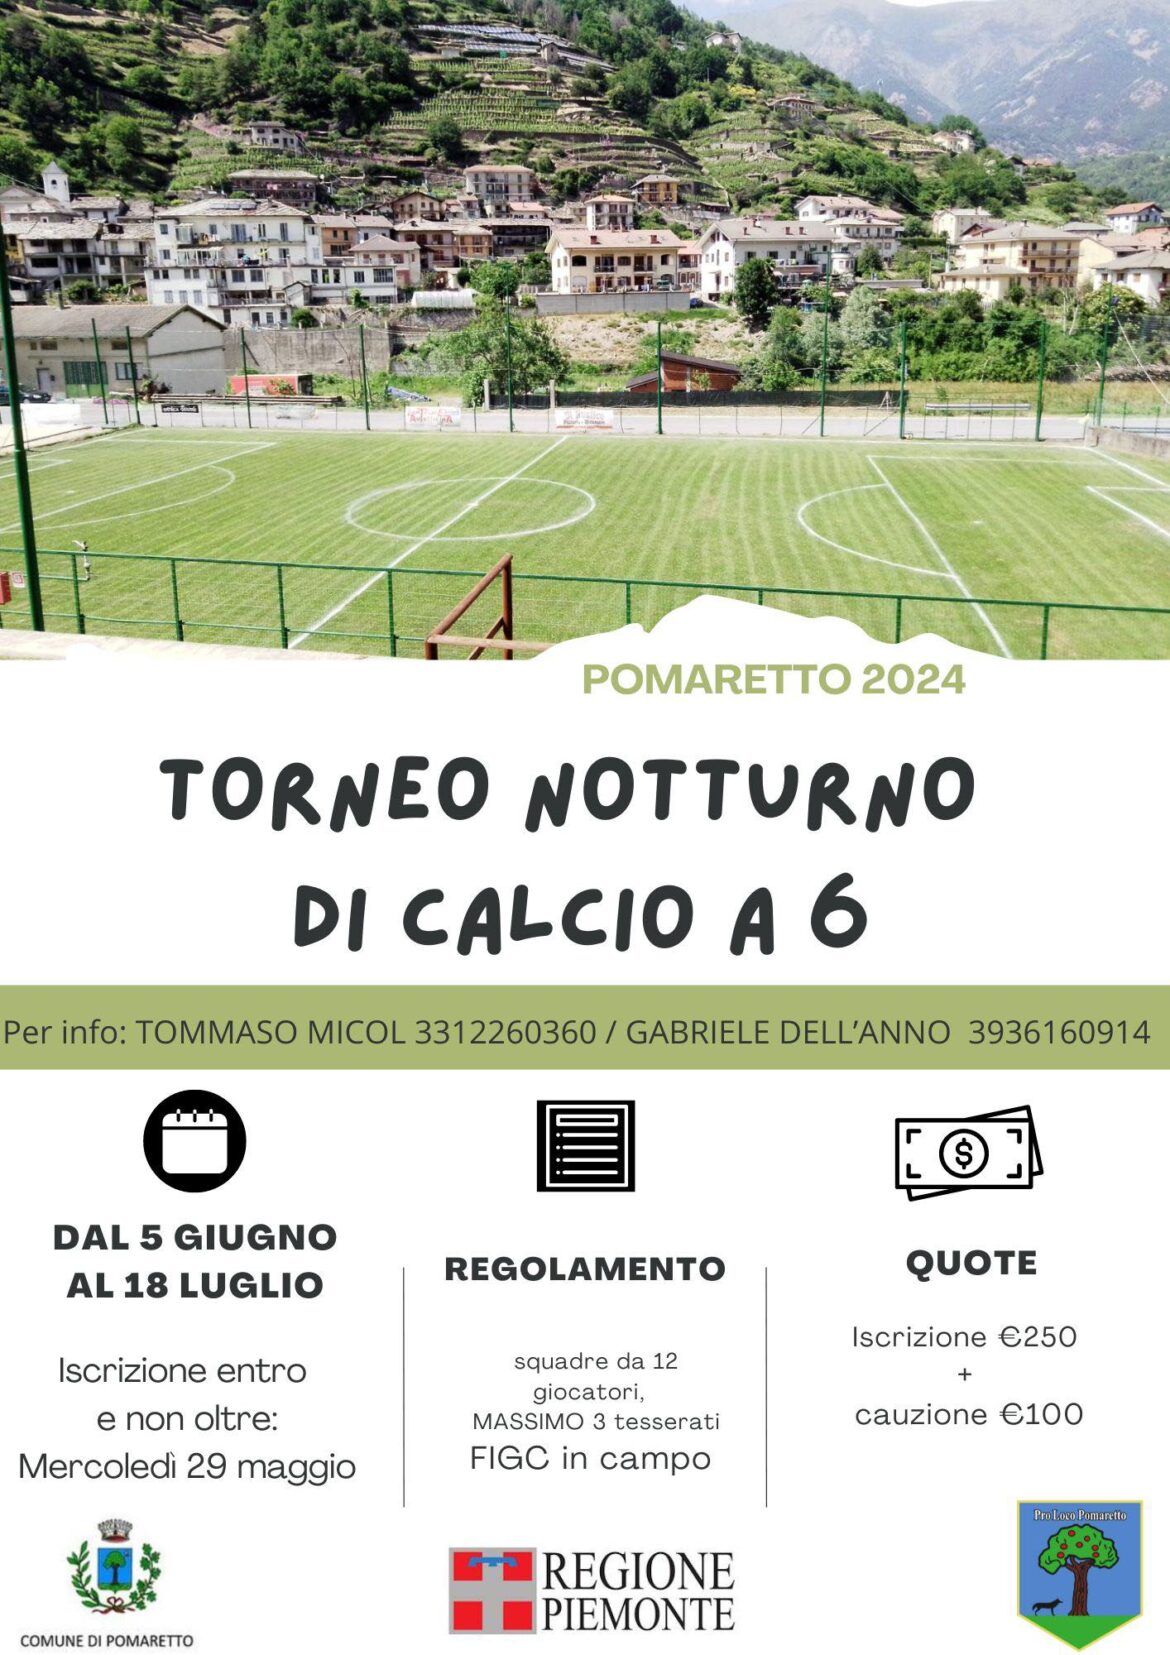 Torneo notturno calcio a 6 Pomaretto 2024